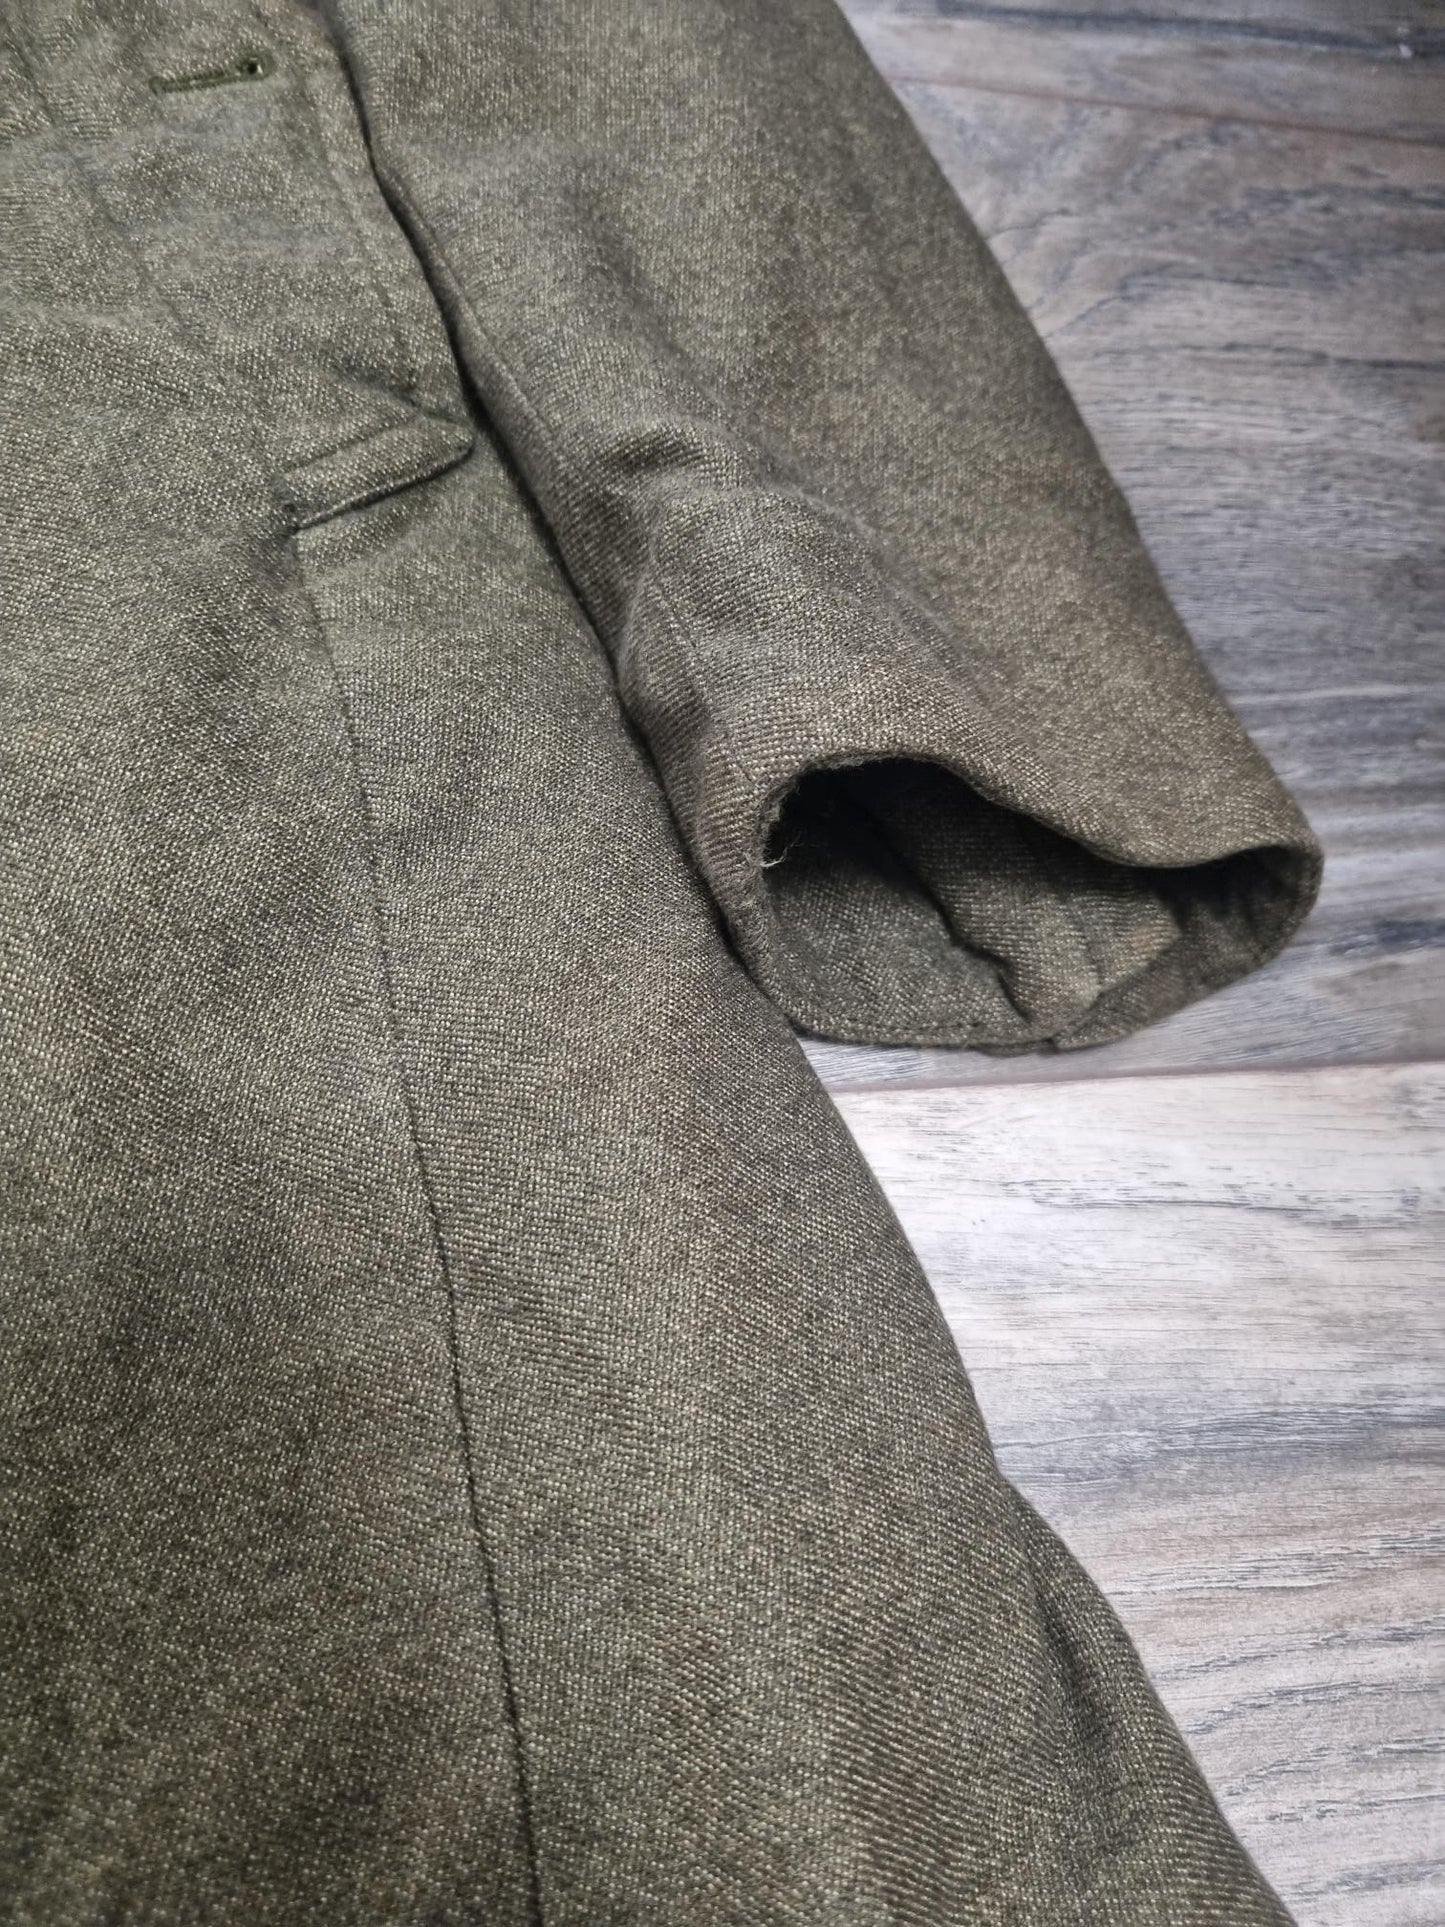 Rag & Bone Khaki Green Cotton Blend Long Coat Size 8